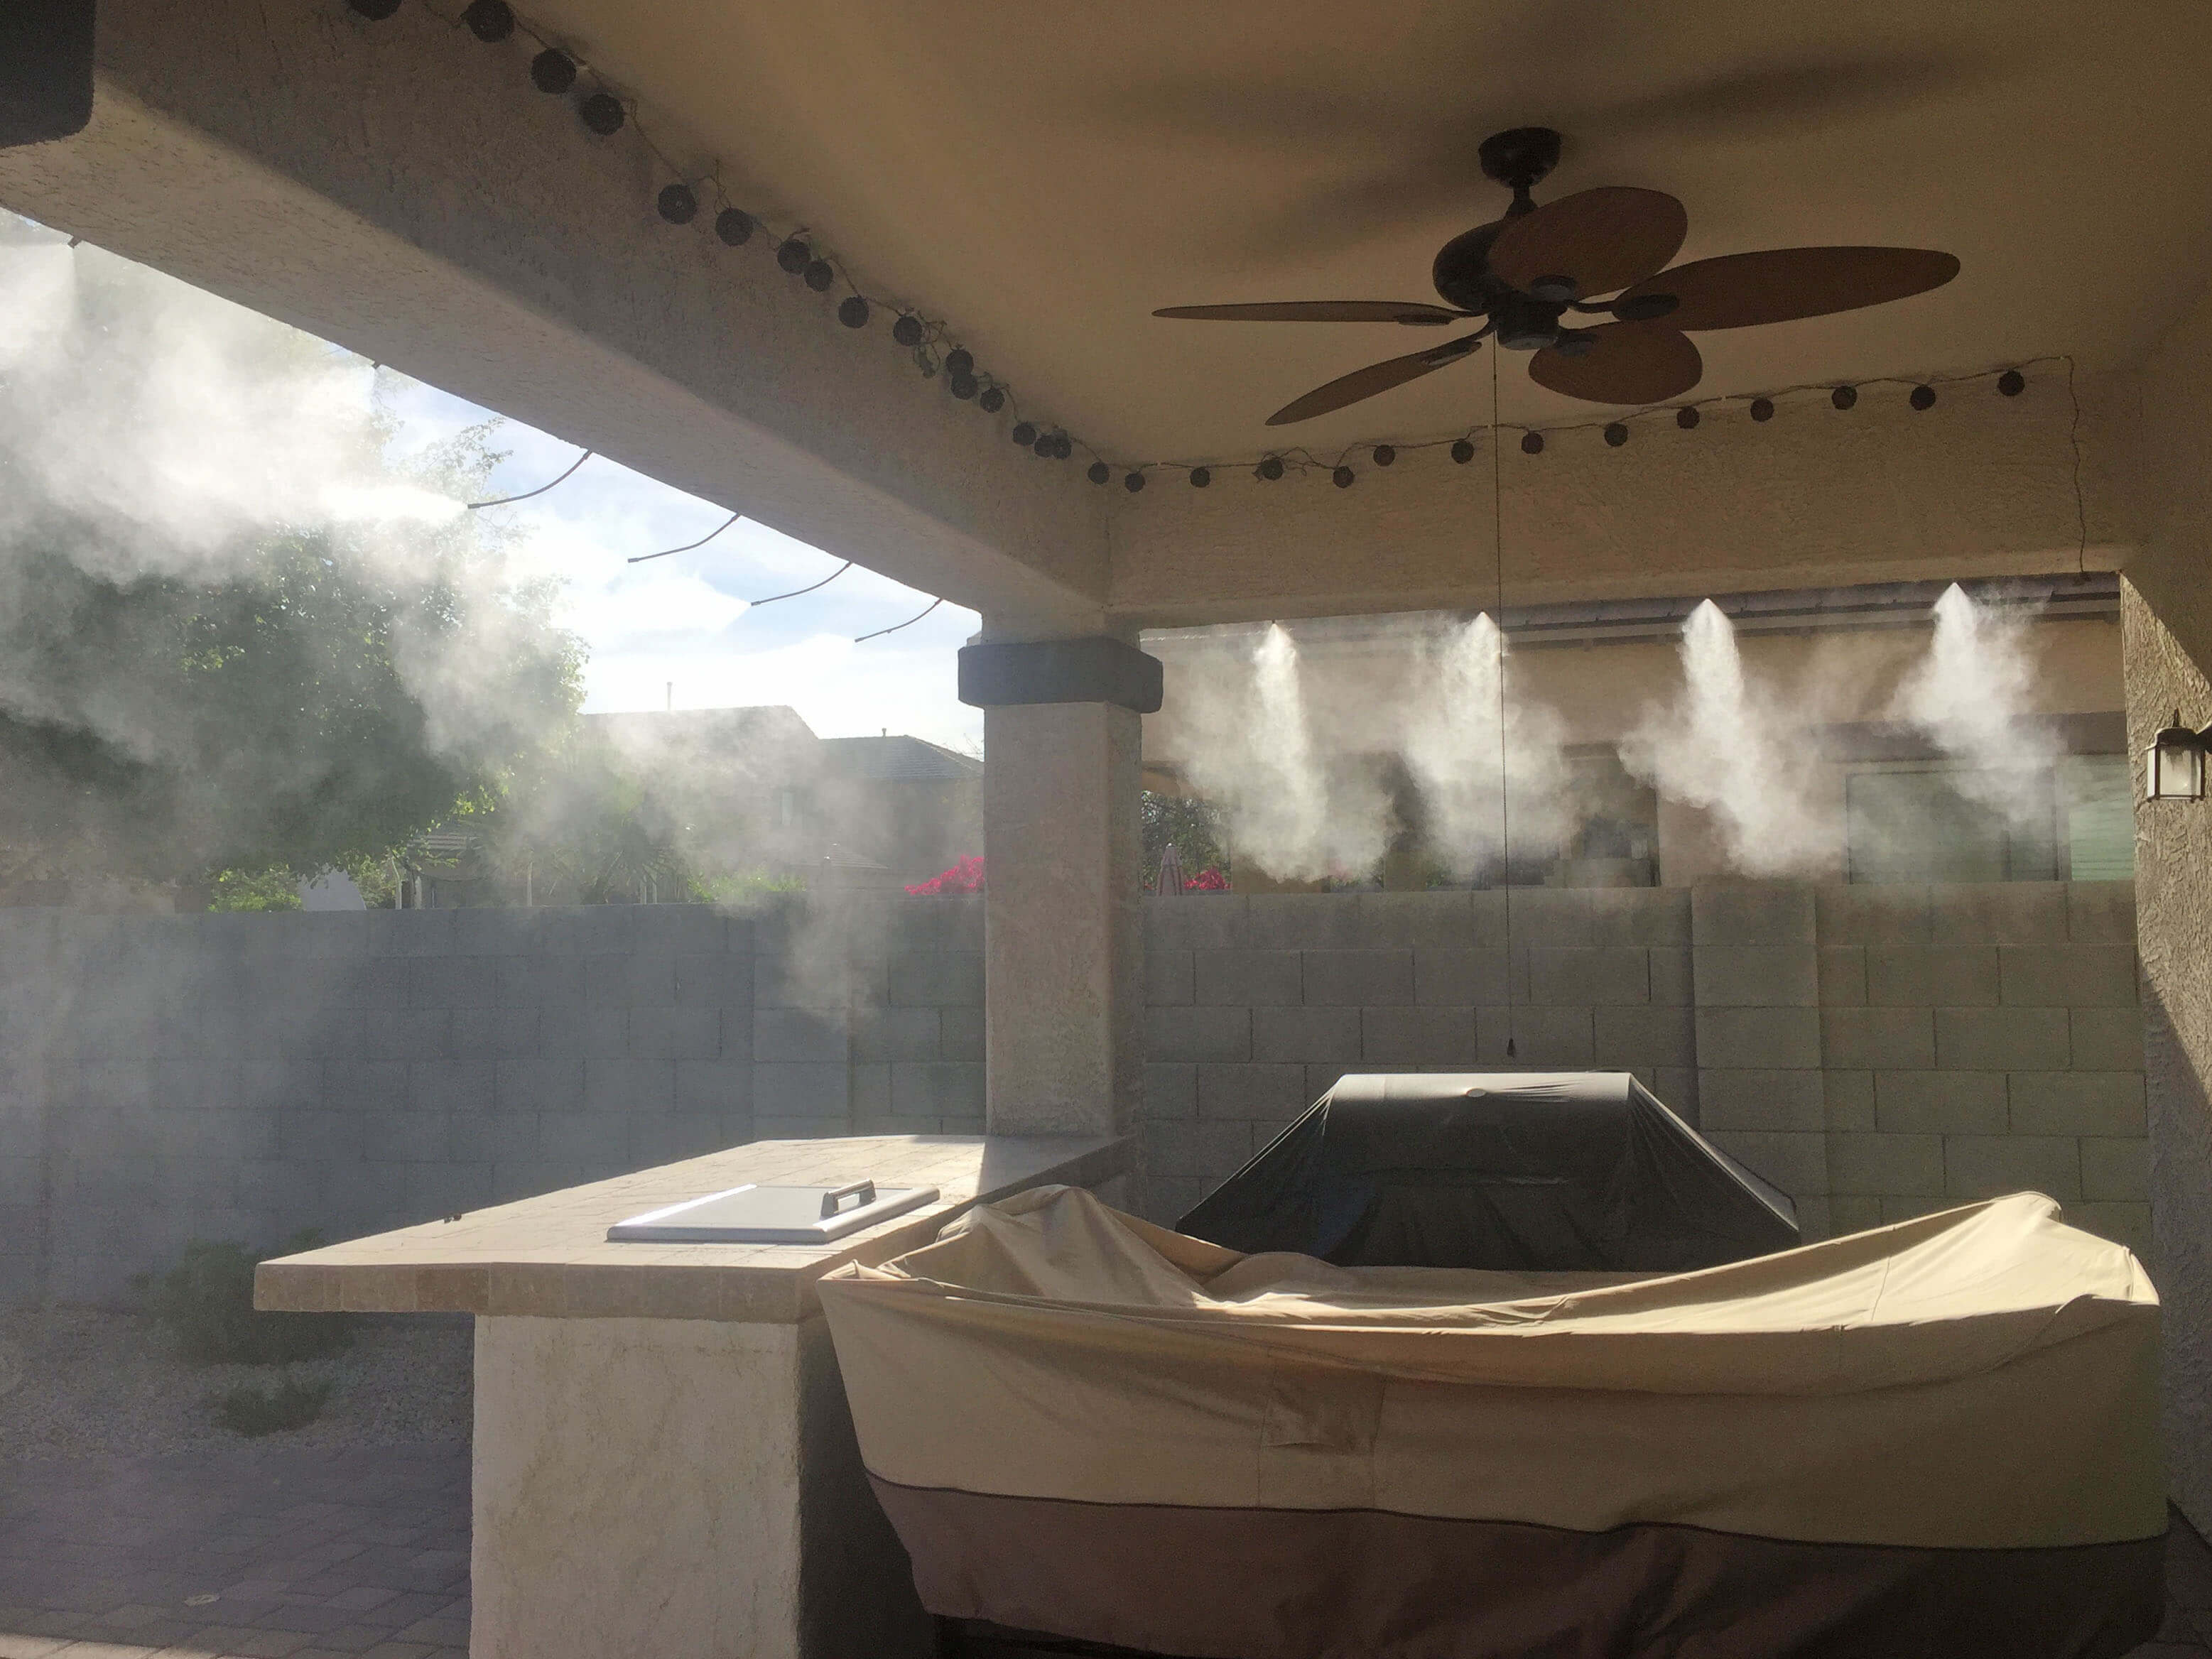 Sunsplash misting system on backyard patio